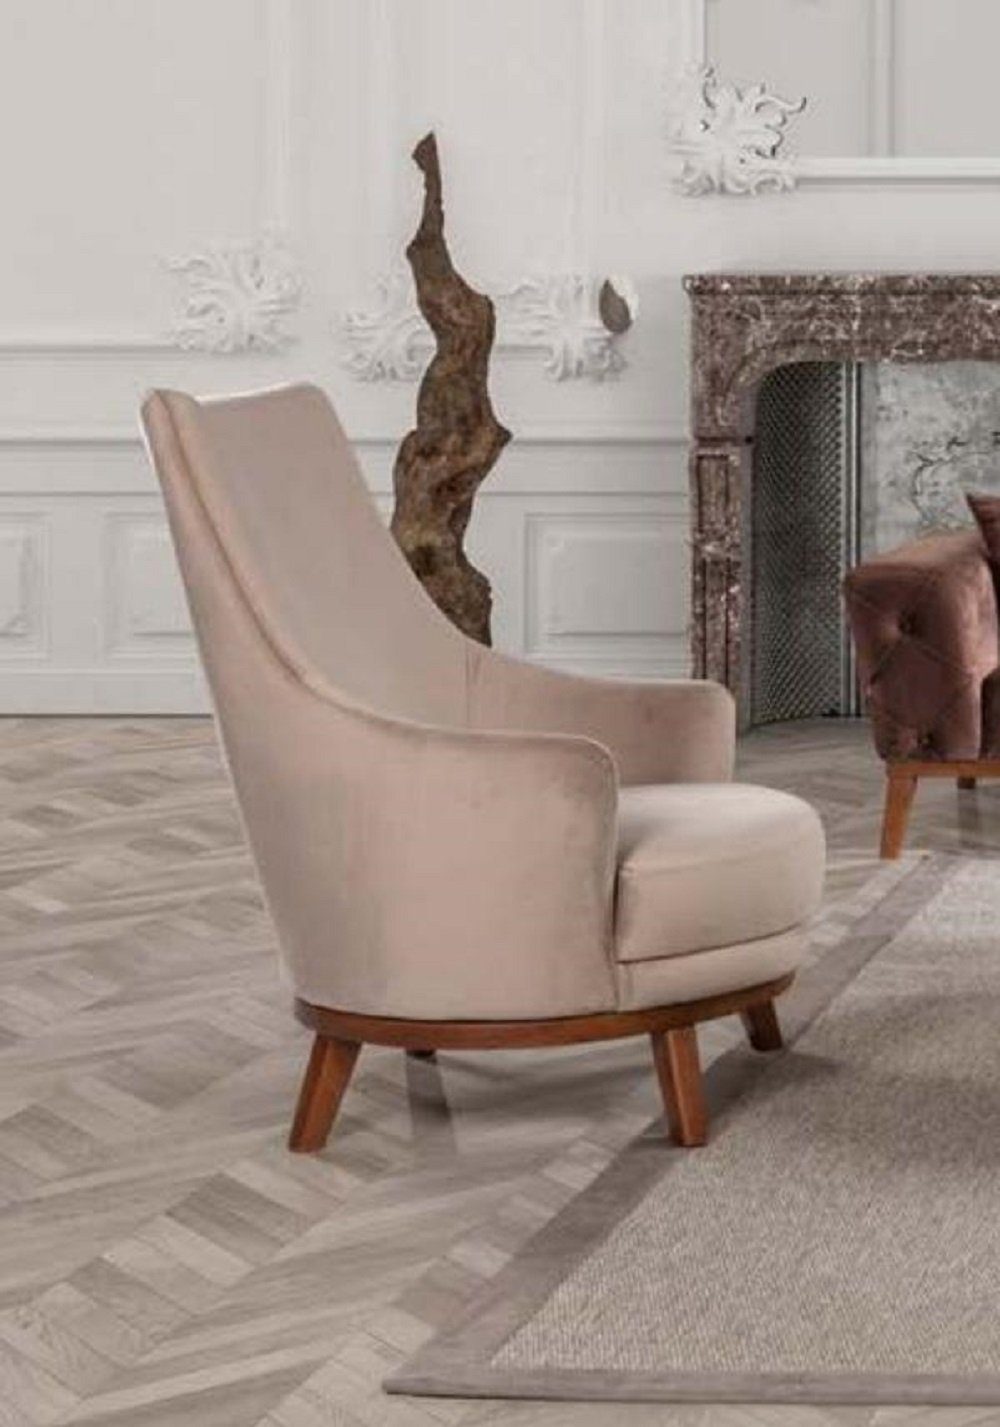 JVmoebel Modernes Stoff Sessel Neu Sessel Wohnzimmer Design Sitz Stil Weiß 1 Farbe